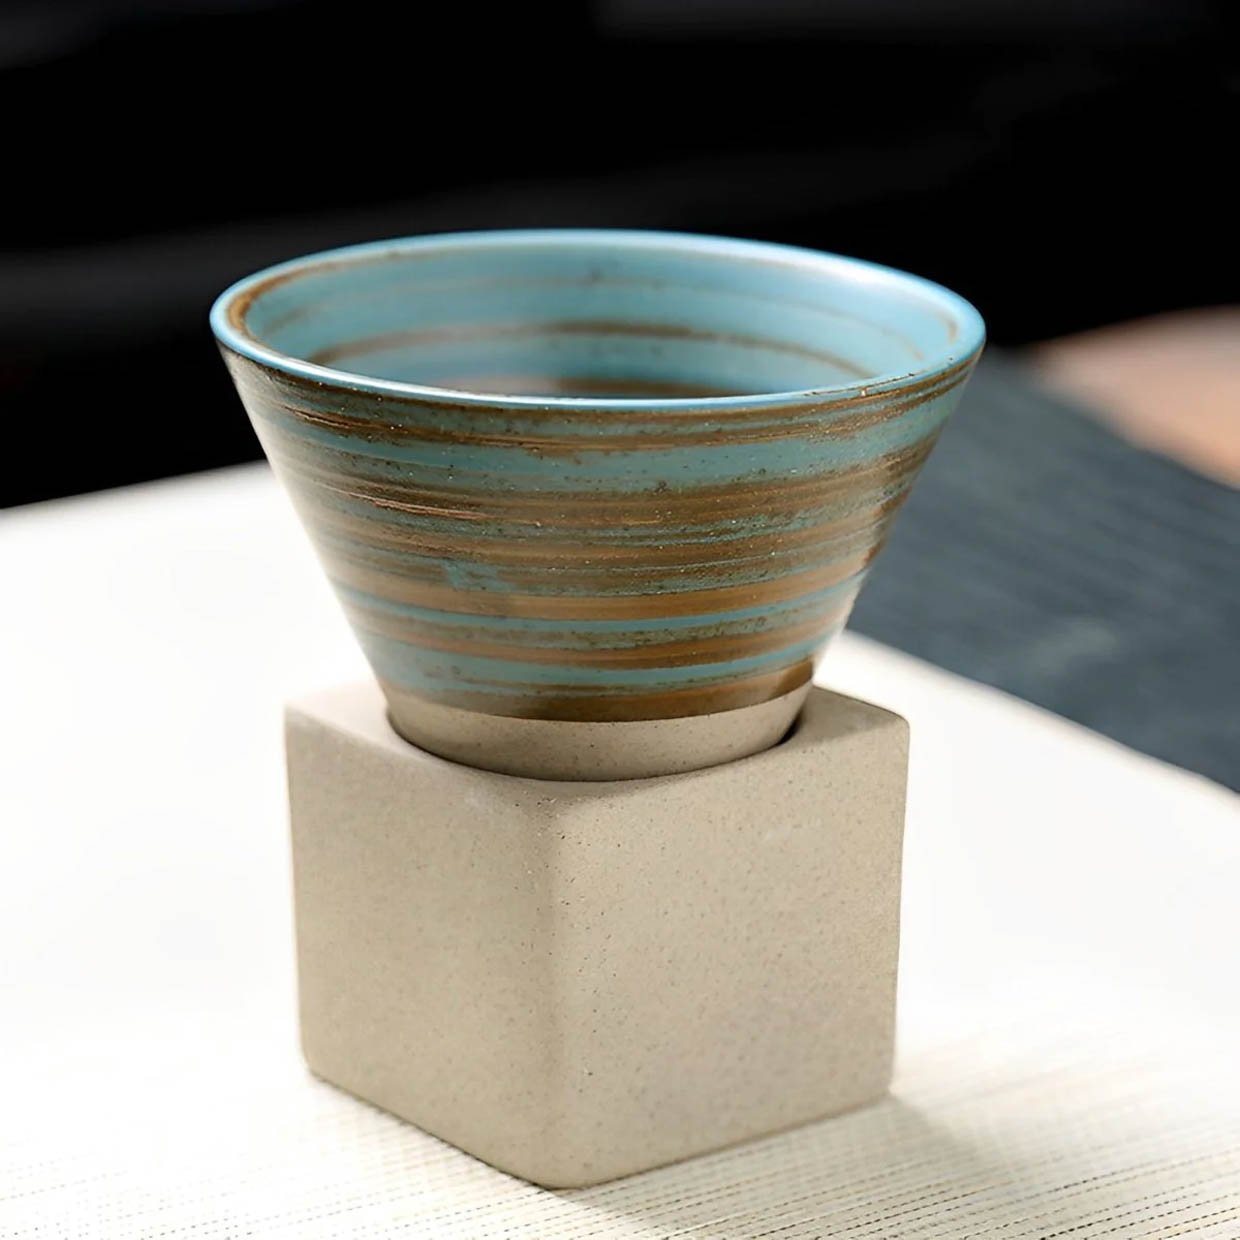 https://theawesomer.com/photos/2023/08/kyoto_ceramic_espresso_cups_3.jpg